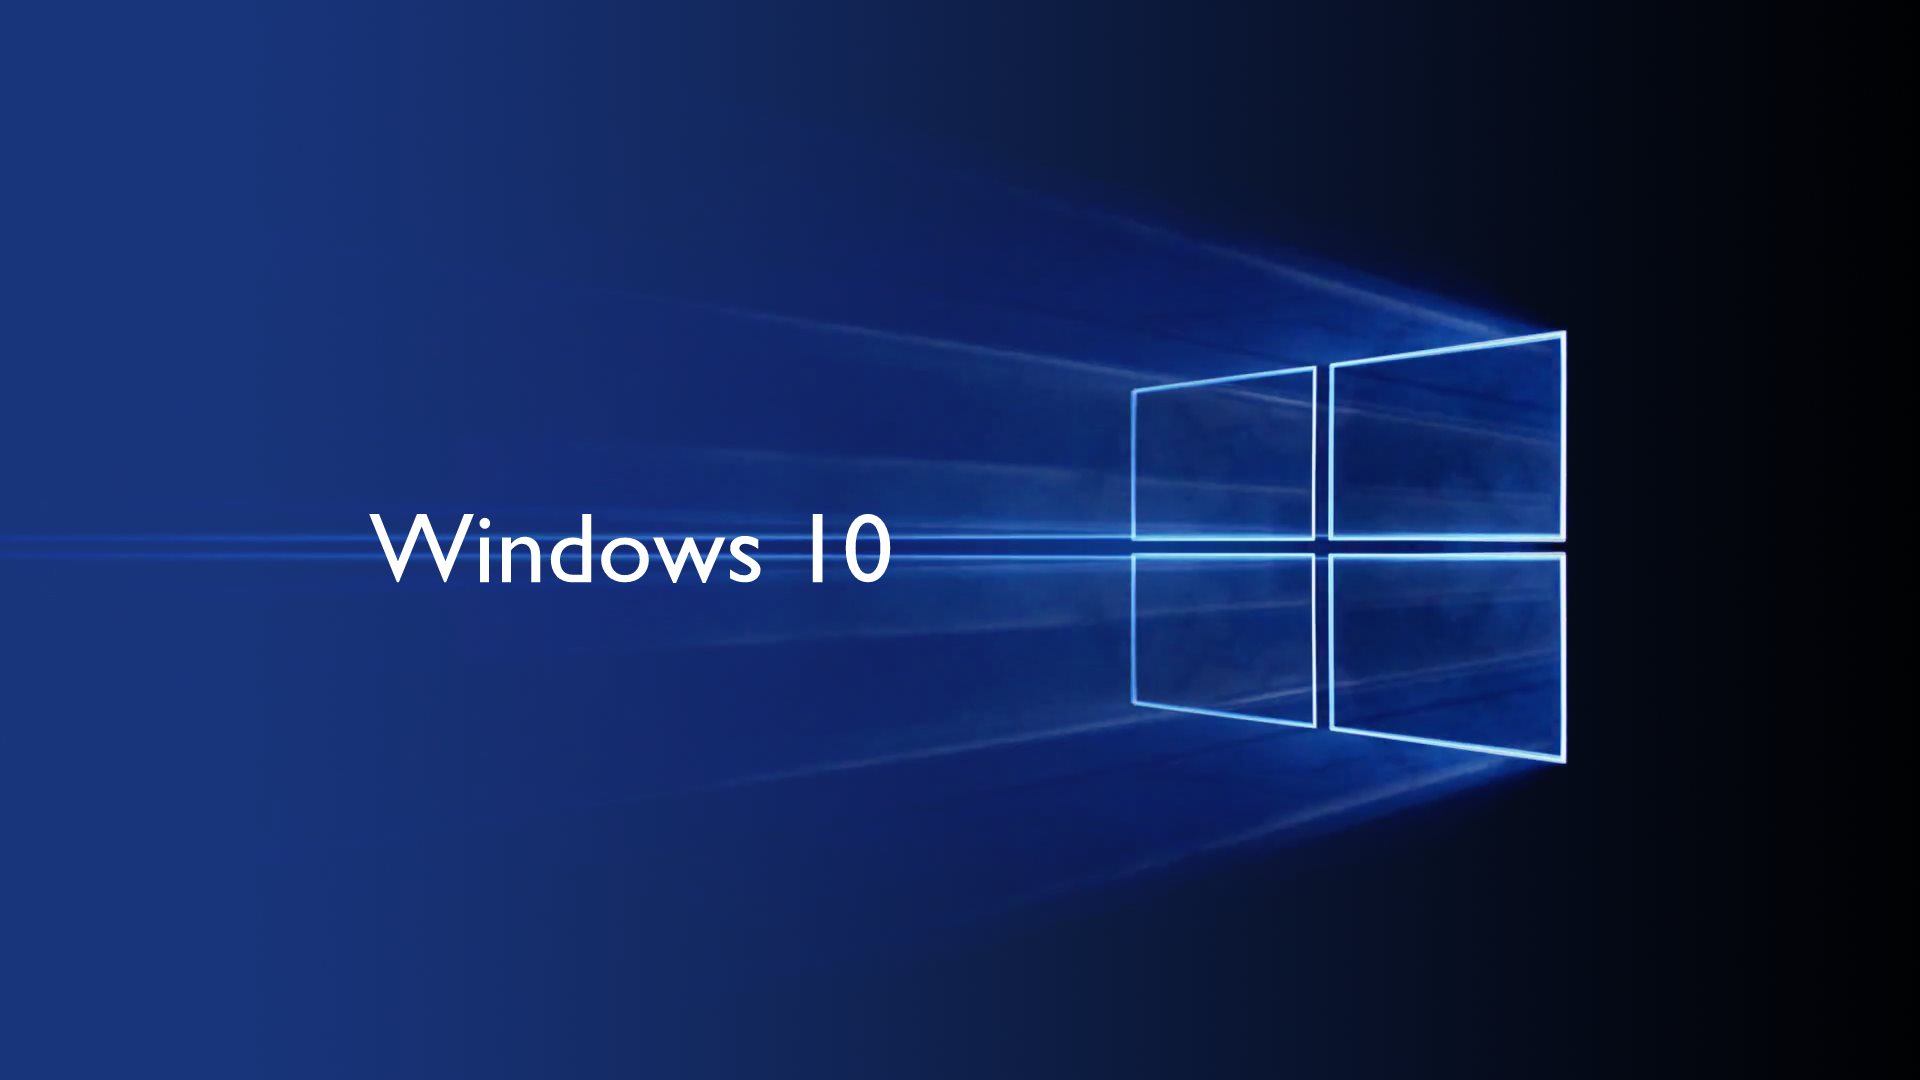 Ping Naik Setelah Upgrade Windows 10 Ini Solusinya